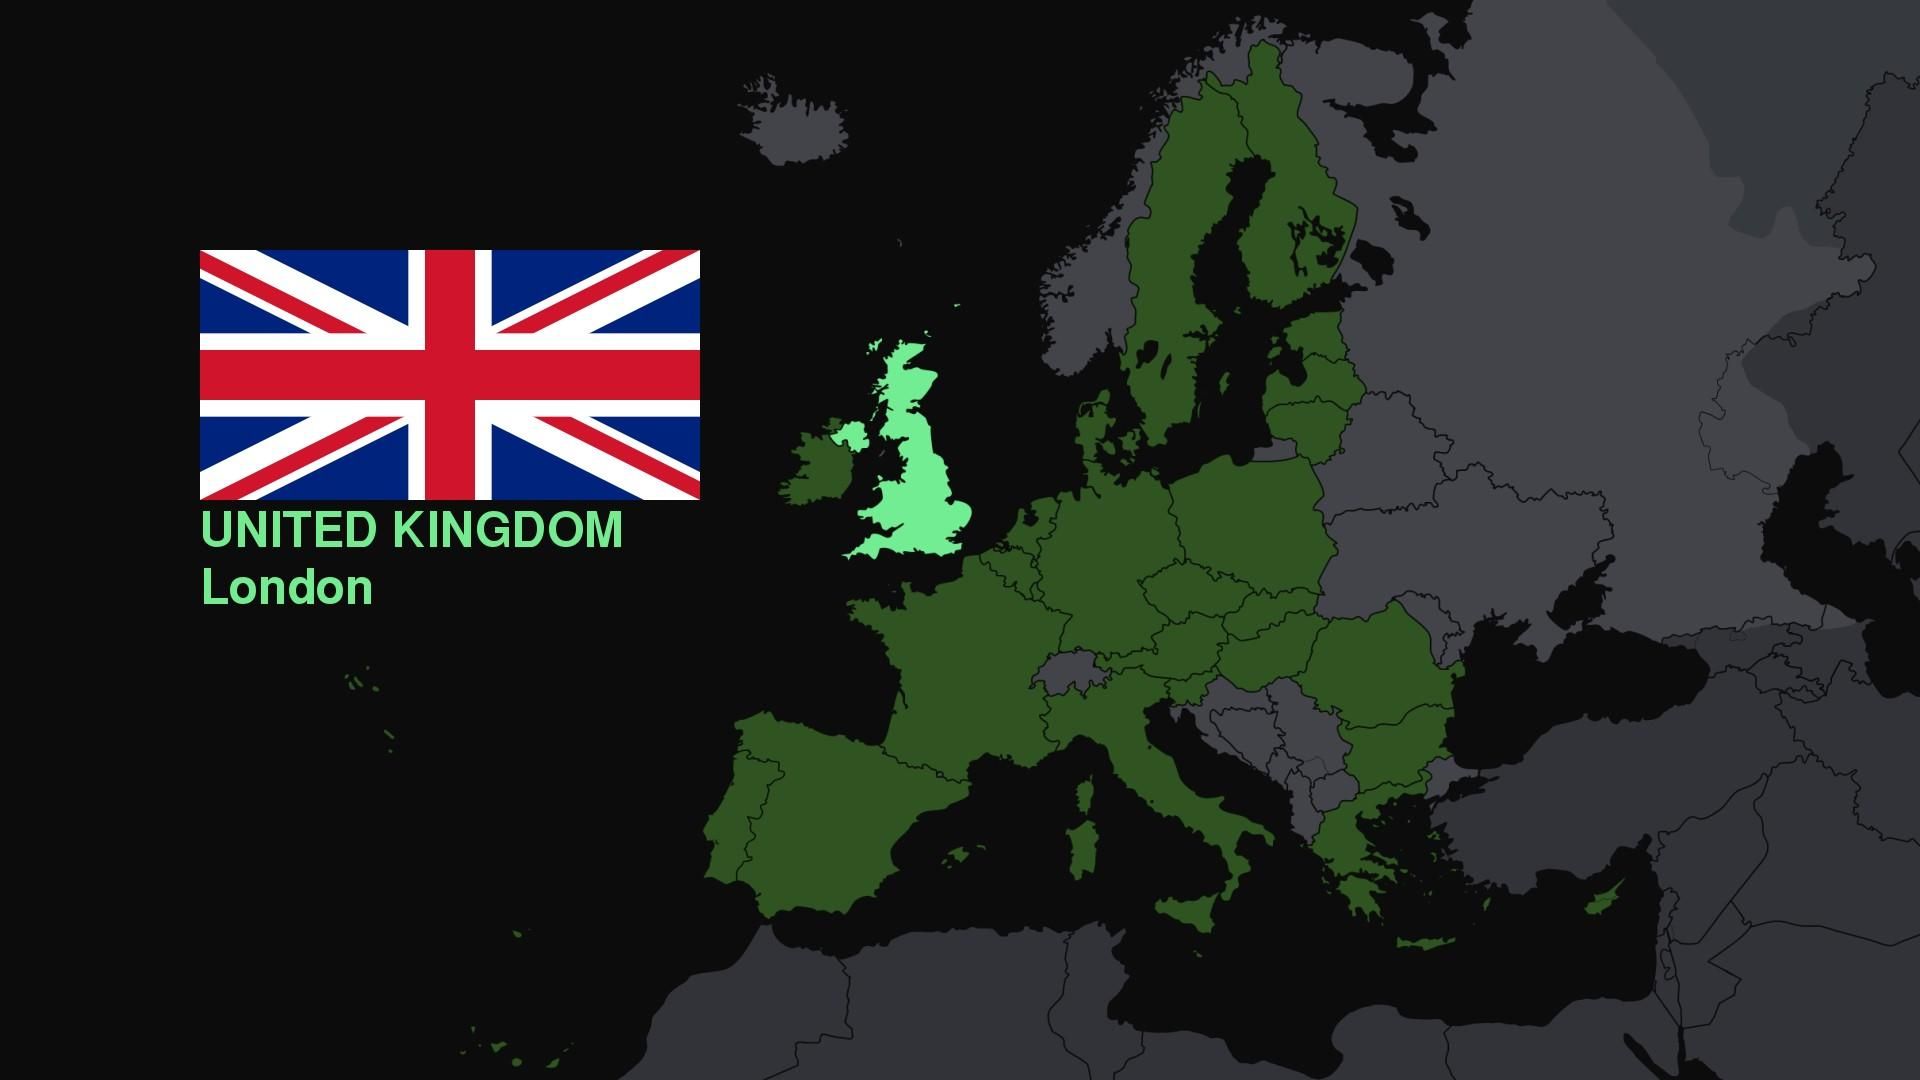 Великобритания на карте мира